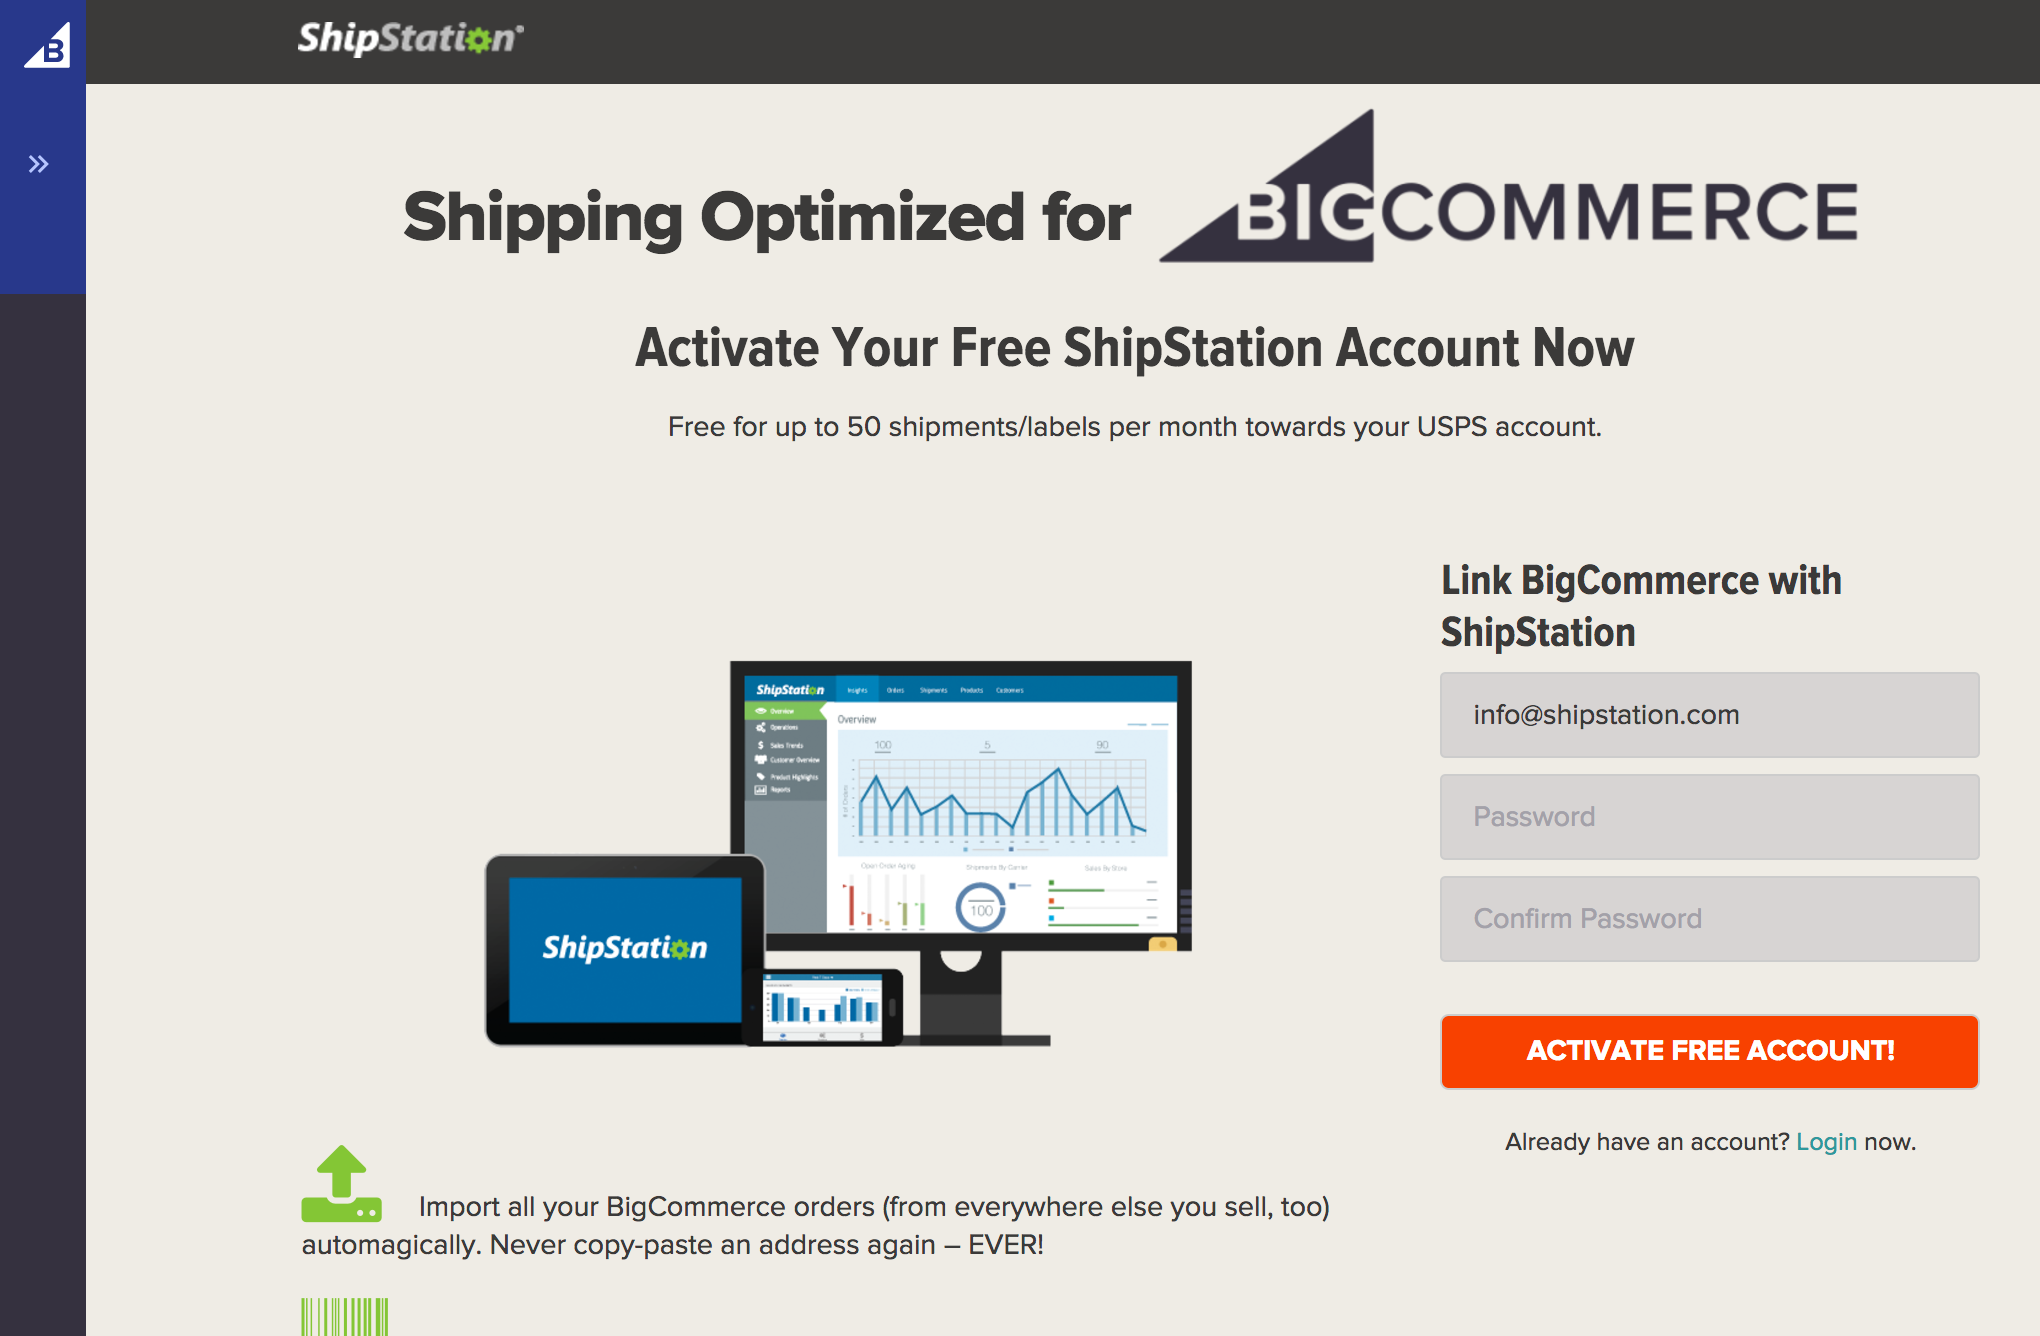 BigCommerce ShipStation Login pop-up menu.